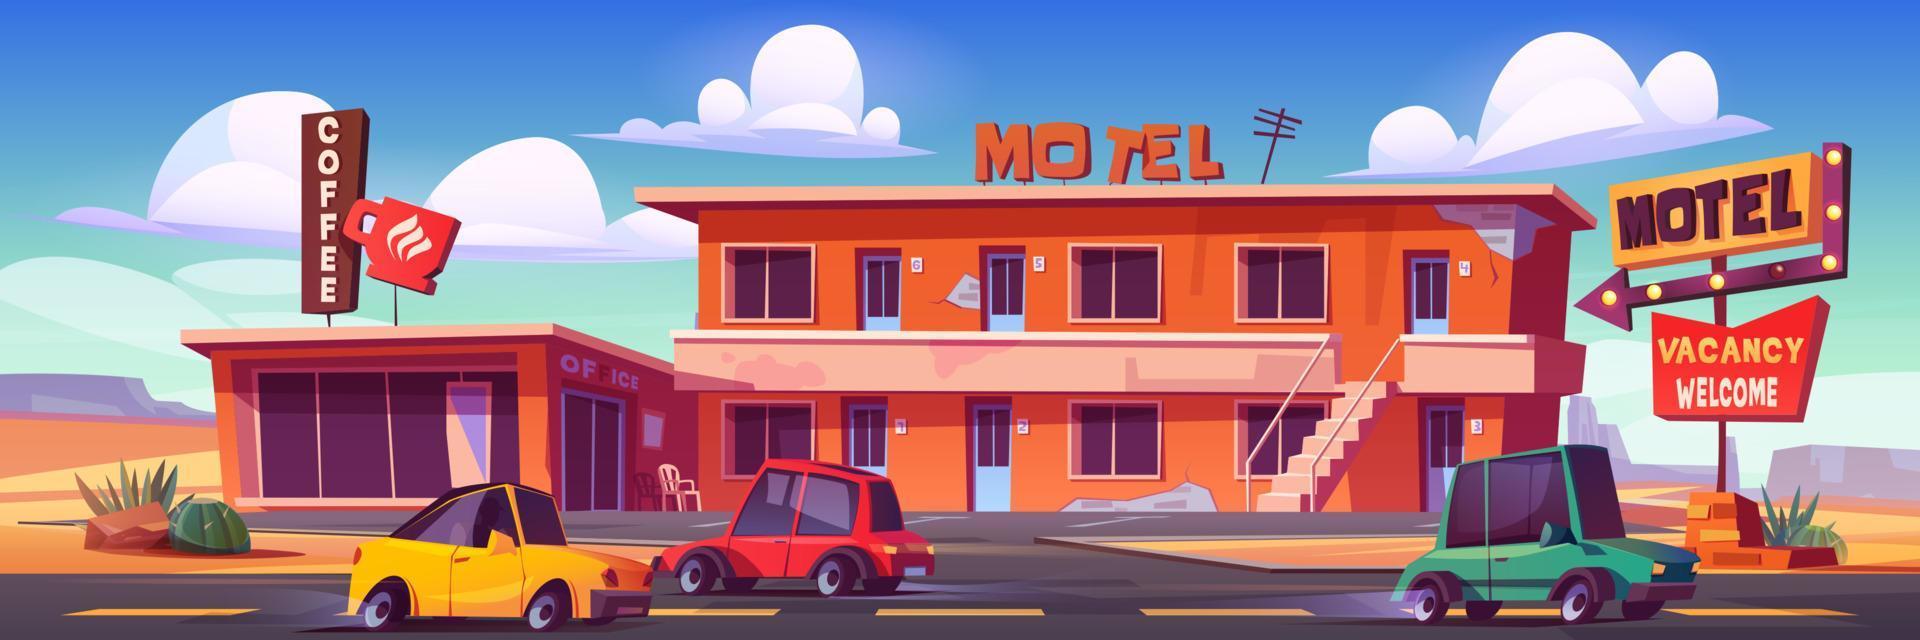 altes Motel mit Café und Parkplatz in der Wüste vektor